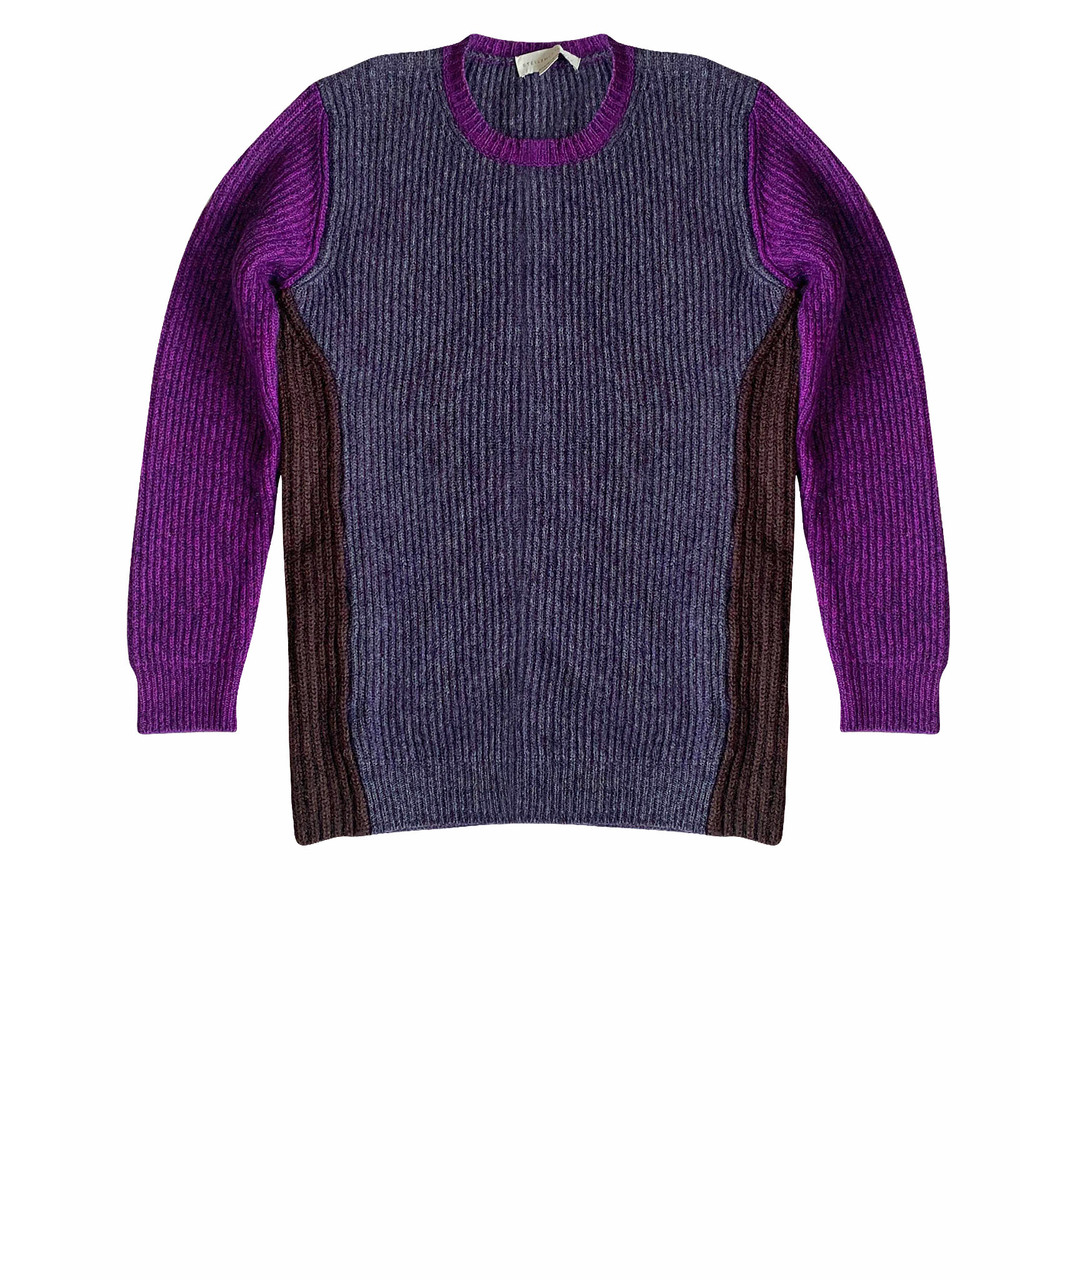 STELLA MCCARTNEY Фиолетовый шерстяной джемпер / свитер, фото 1